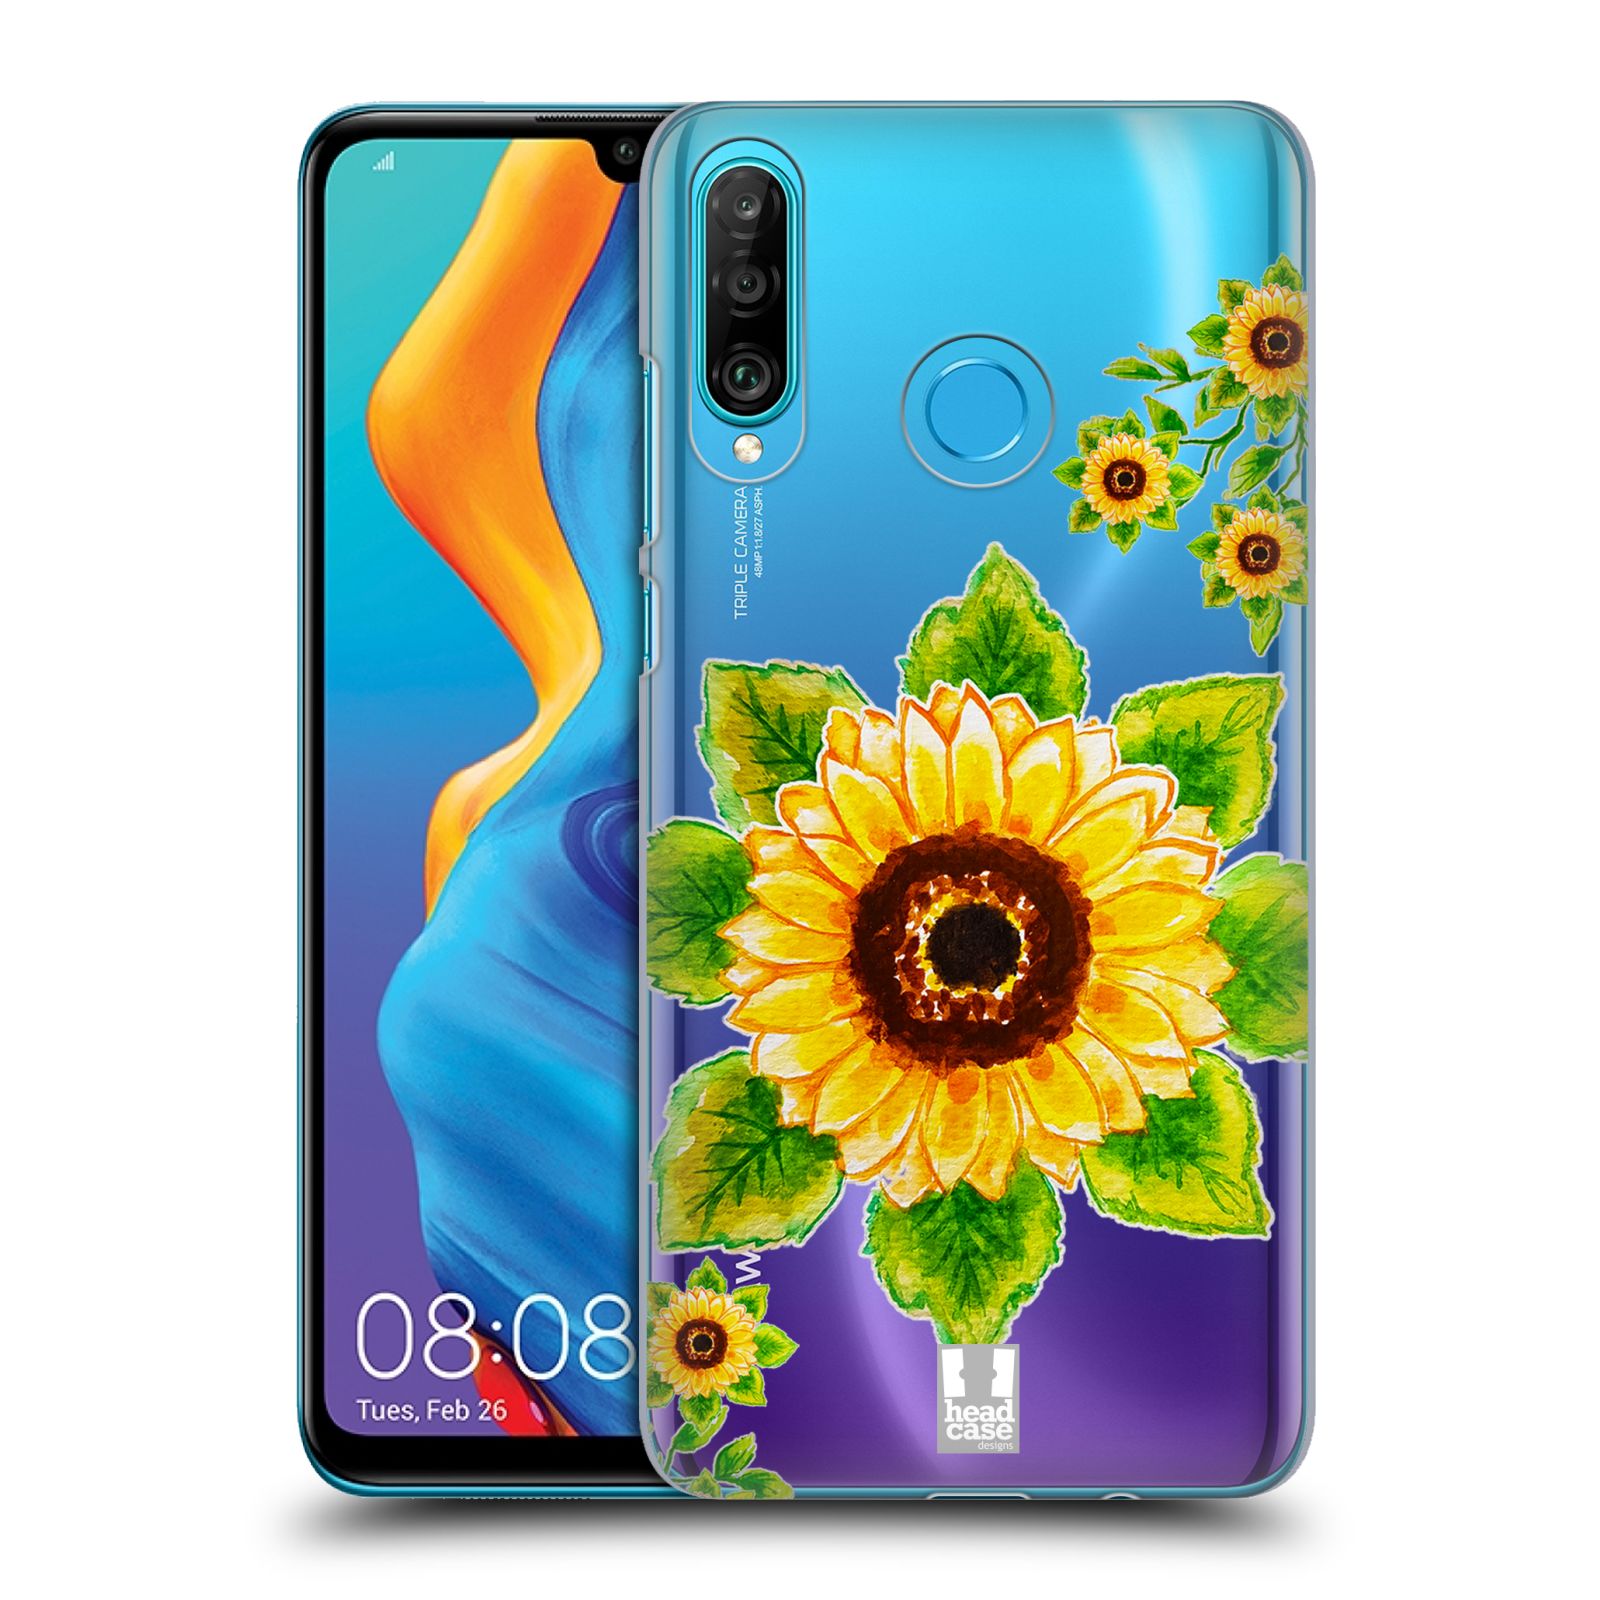 Pouzdro na mobil Huawei P30 LITE - HEAD CASE - Květina Slunečnice vodní barvy